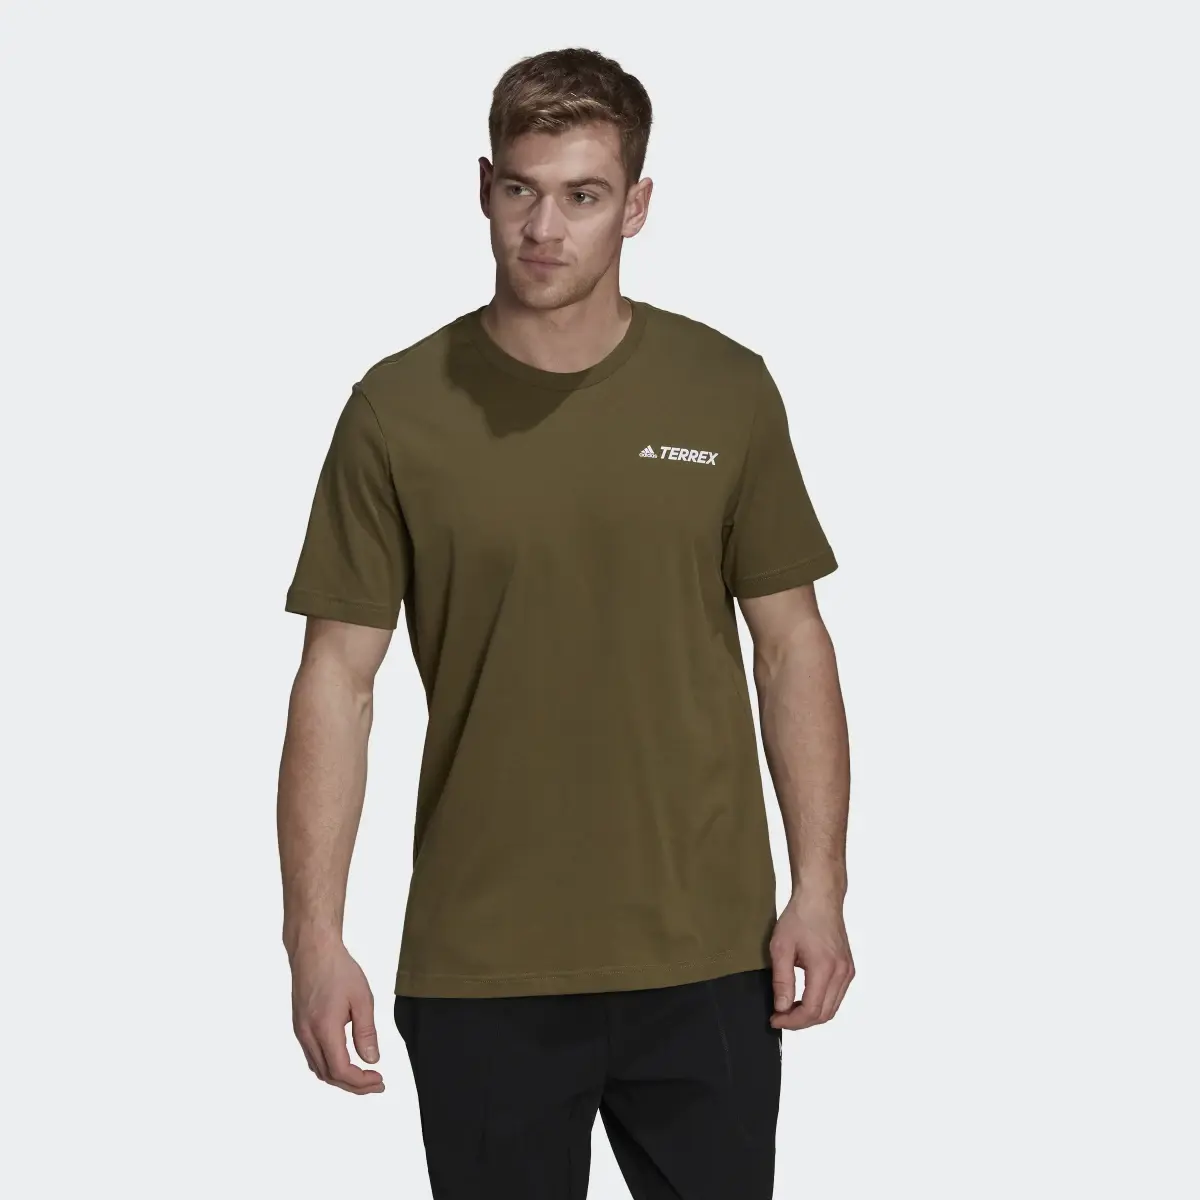 Adidas Camiseta Terrex Mountain Graphic. 2